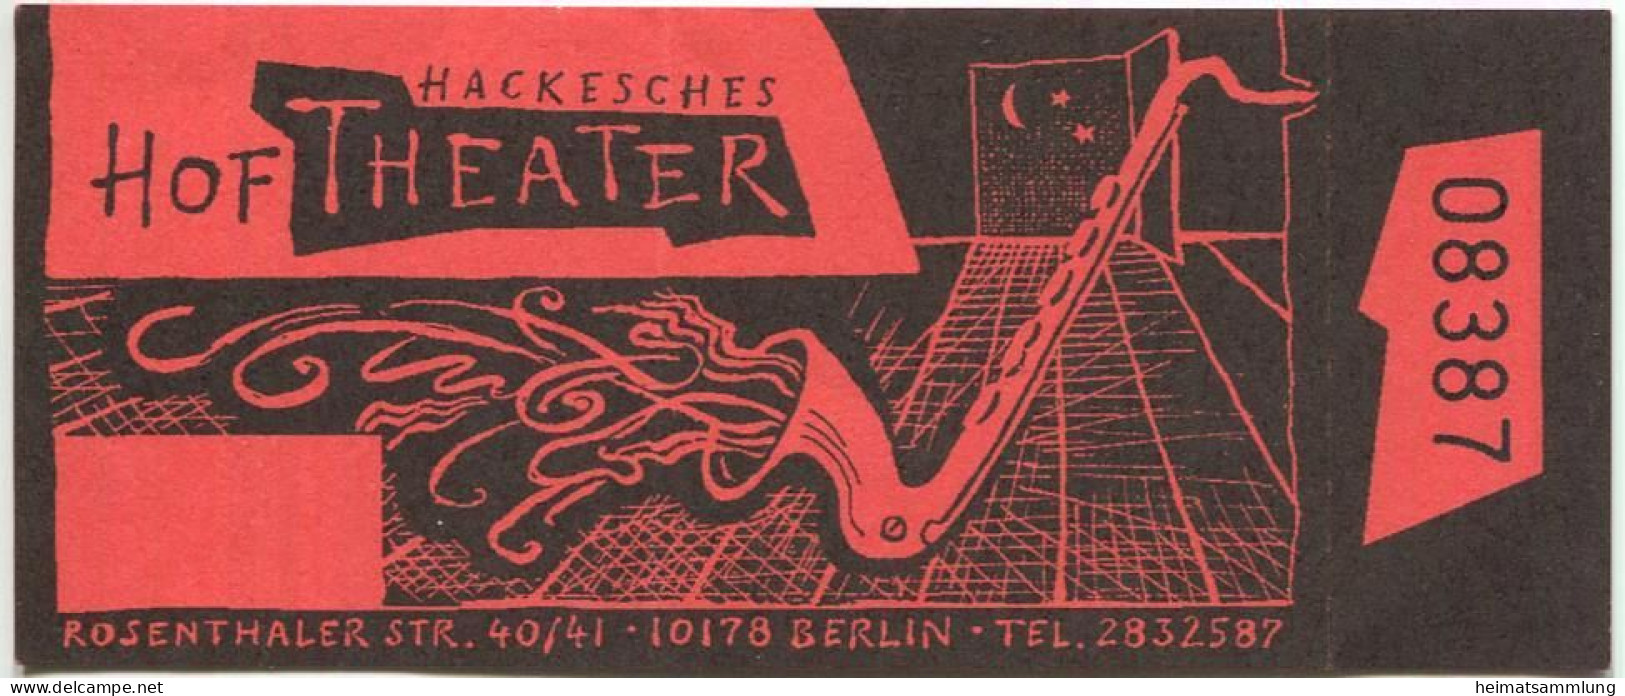 Deutschland - Berlin - Hackesches Hof Theater - Rosenthaler Str. 40/41 - Eintrittskarte - Tickets - Entradas